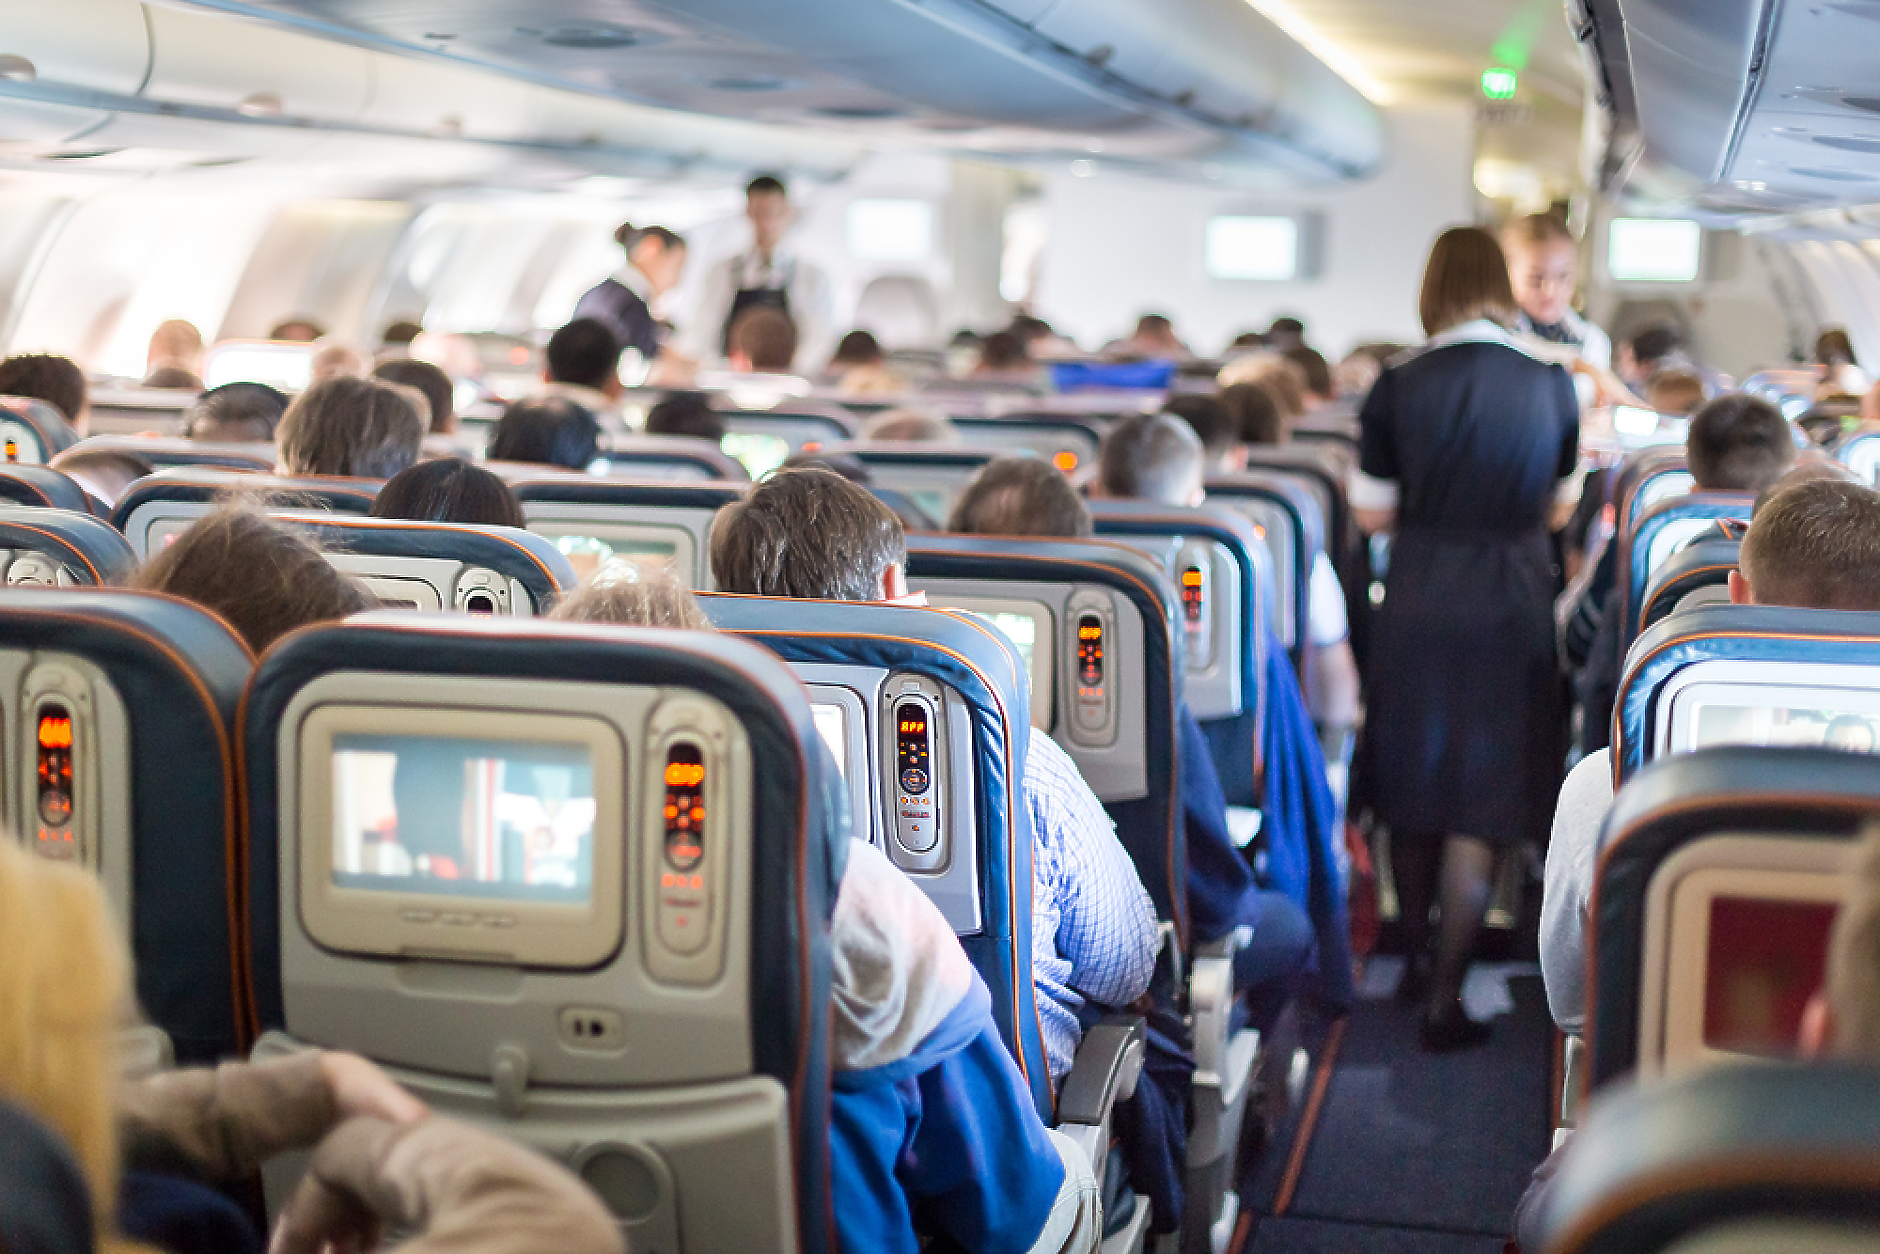 Проучване показва най-добре и най-зле оценените авиокомпании от техните потребители